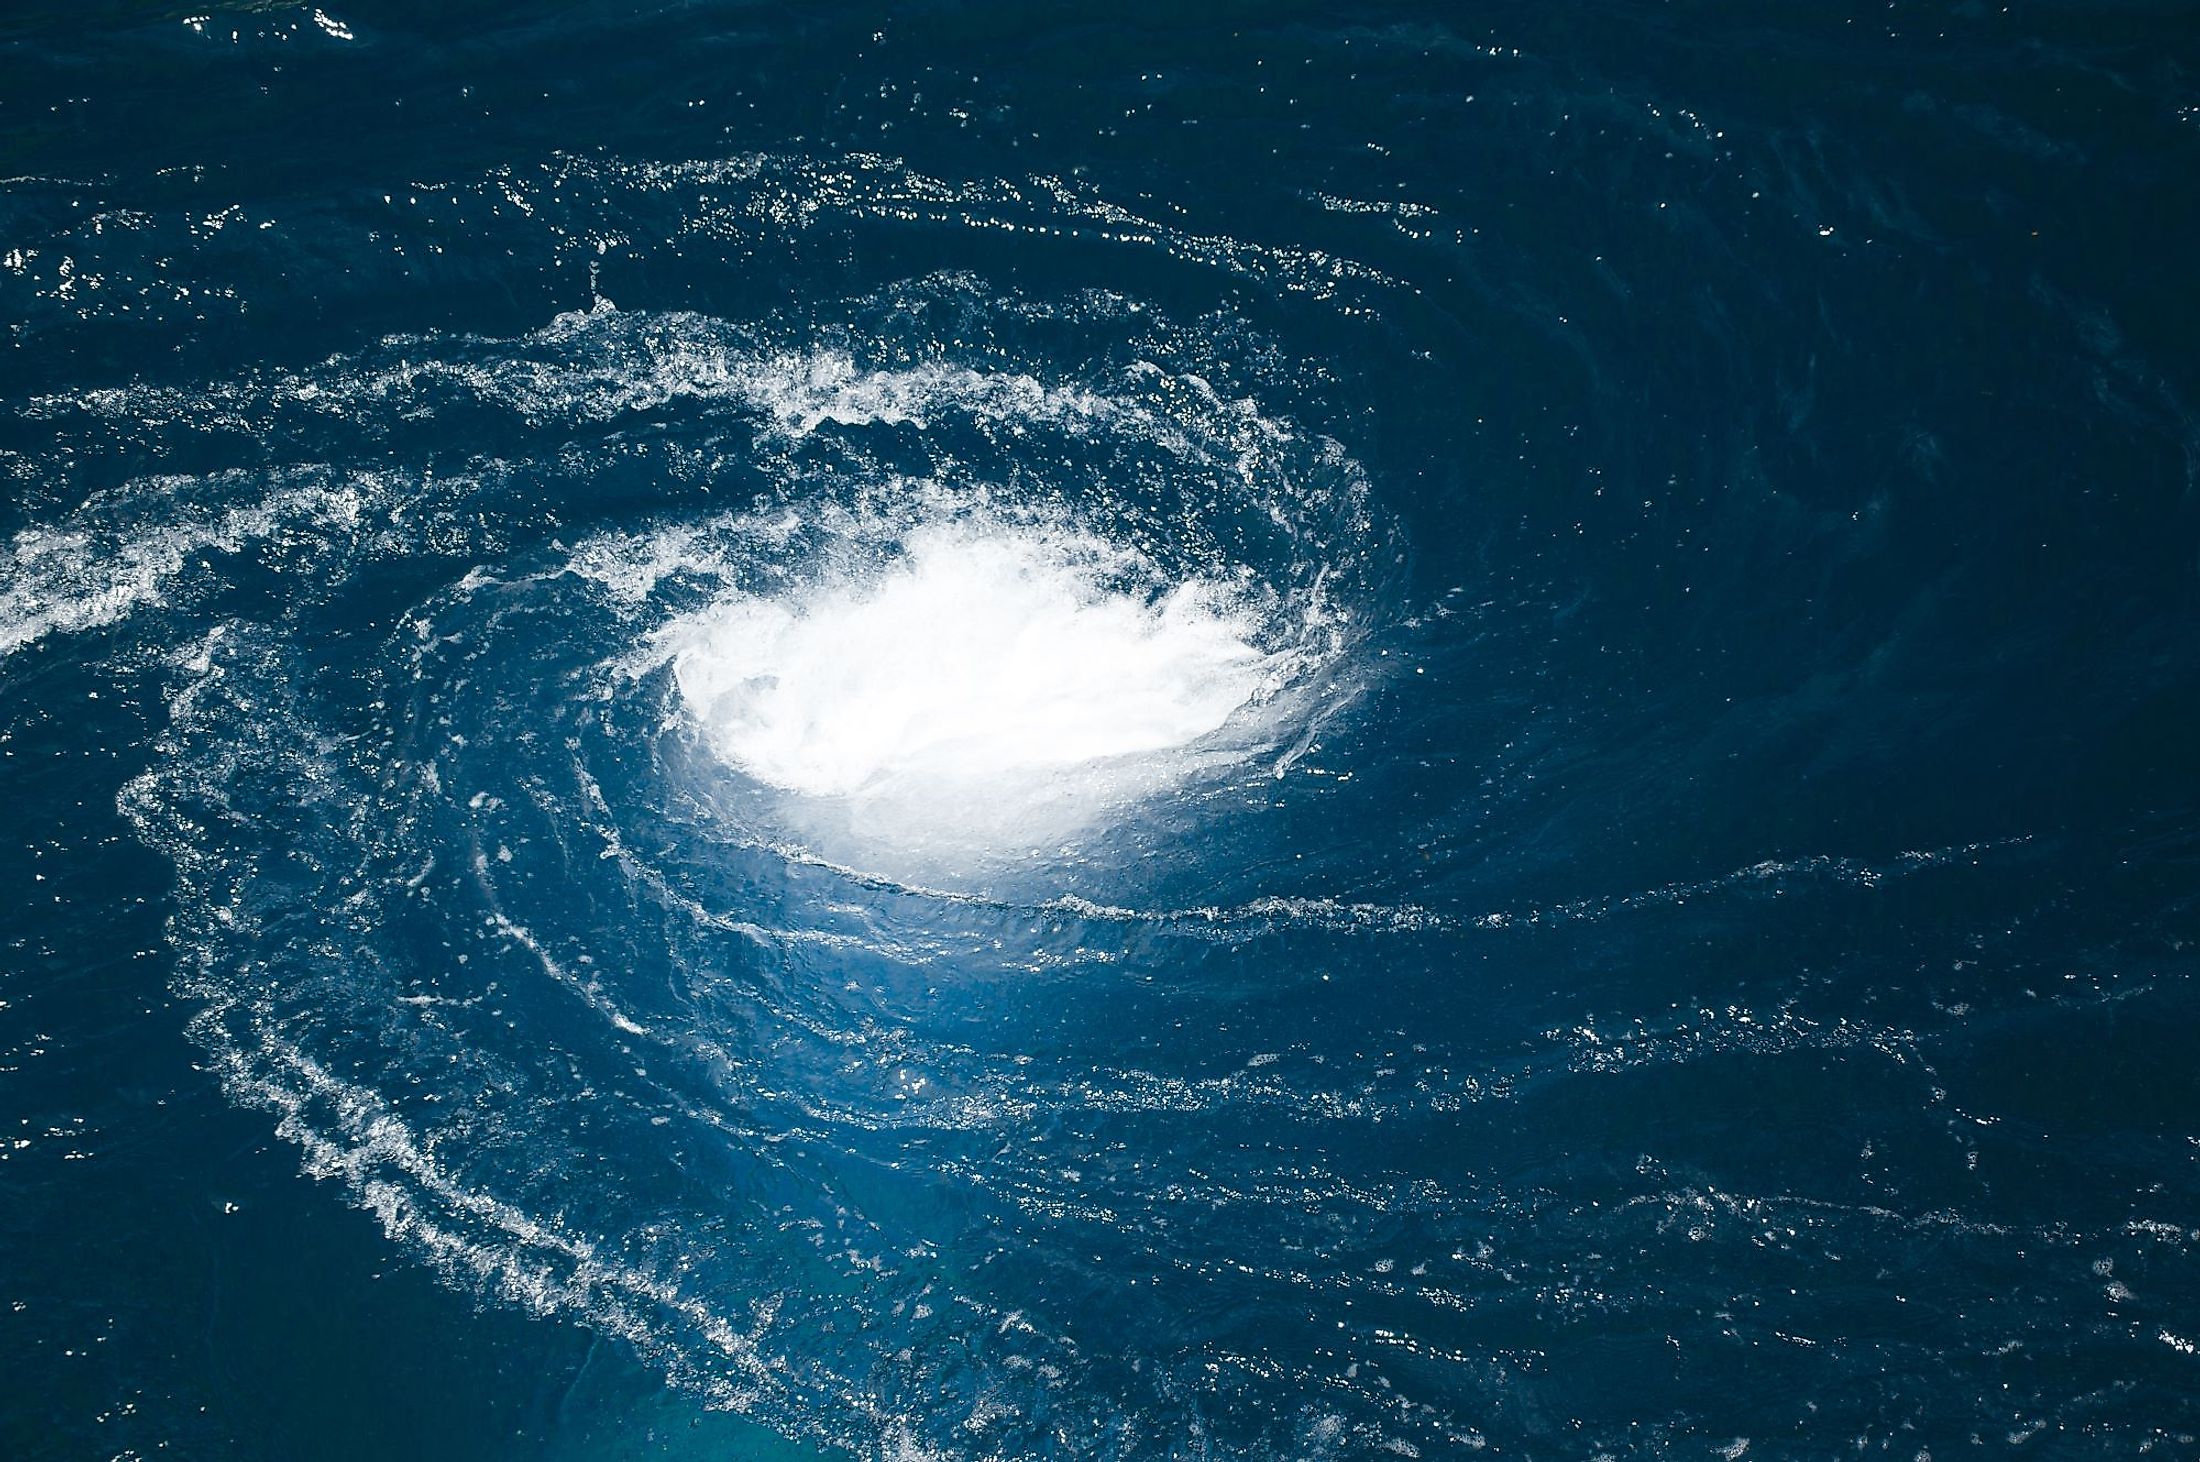 A blue water vortex